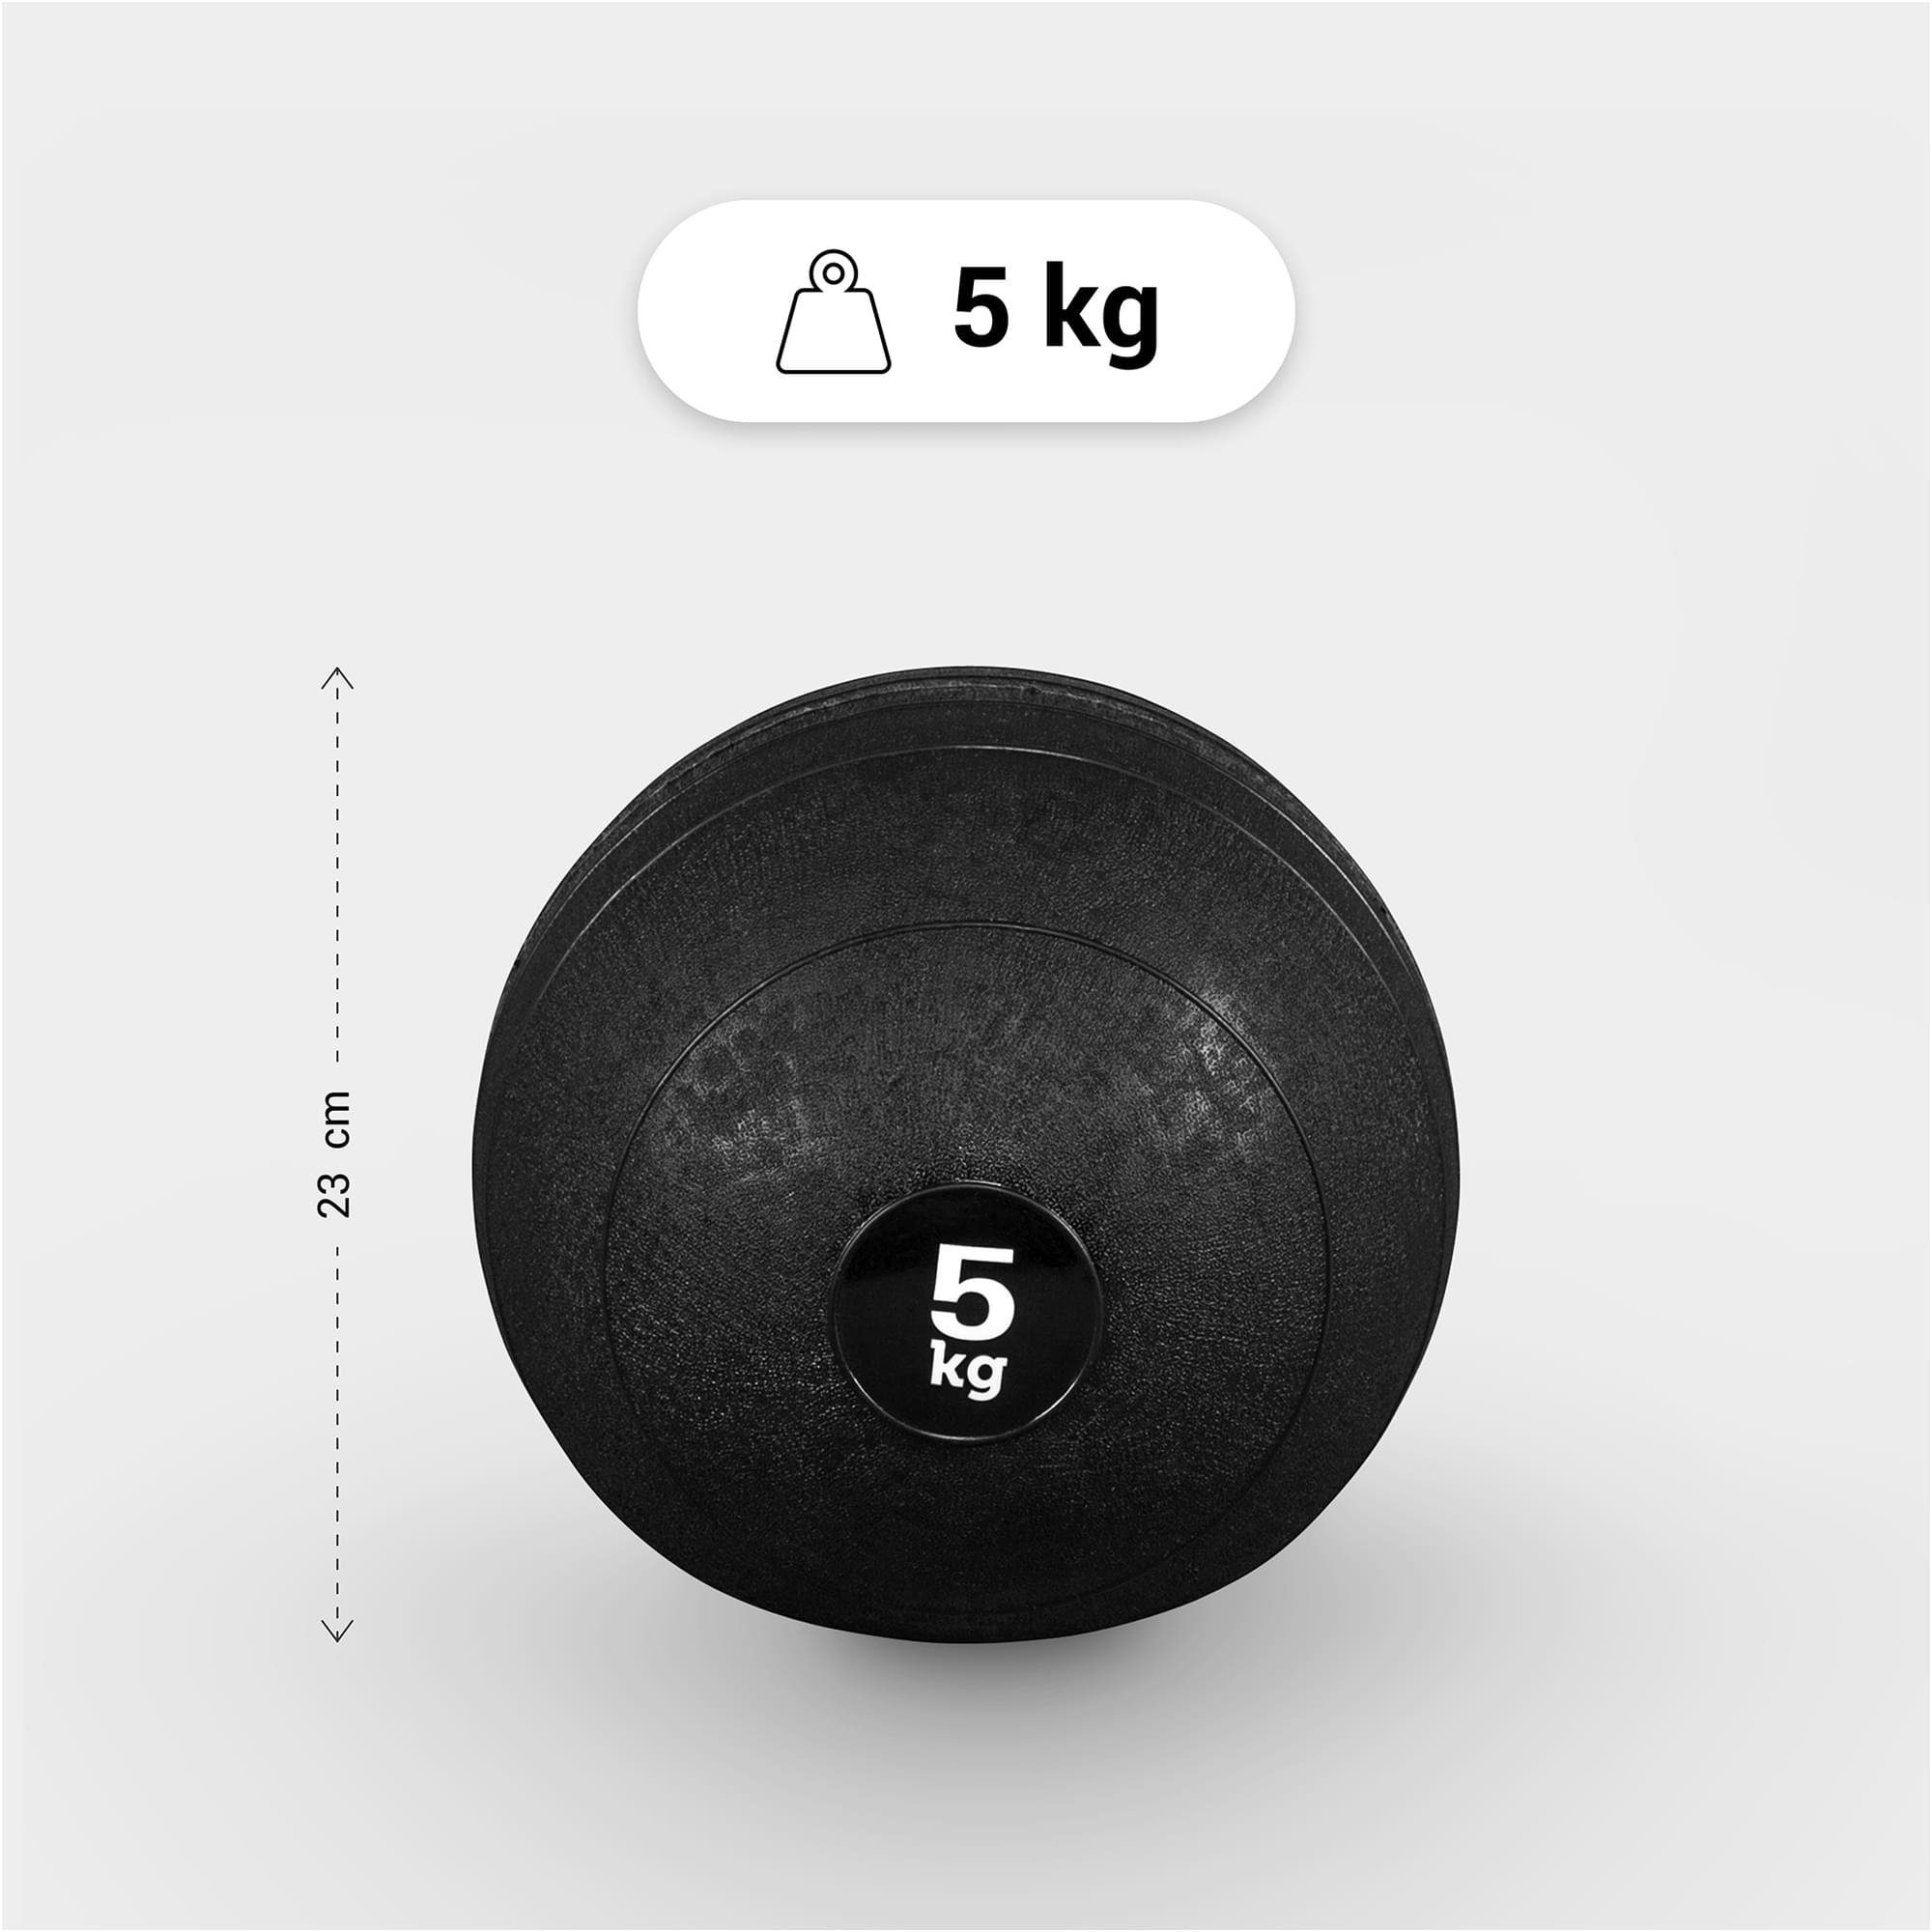 Oberfläche 3kg, GORILLA Griffiger SPORTS 20kg, 15kg, Einzeln/Set, 7kg, 15kg Set Medizinball 10kg, 5kg, mit